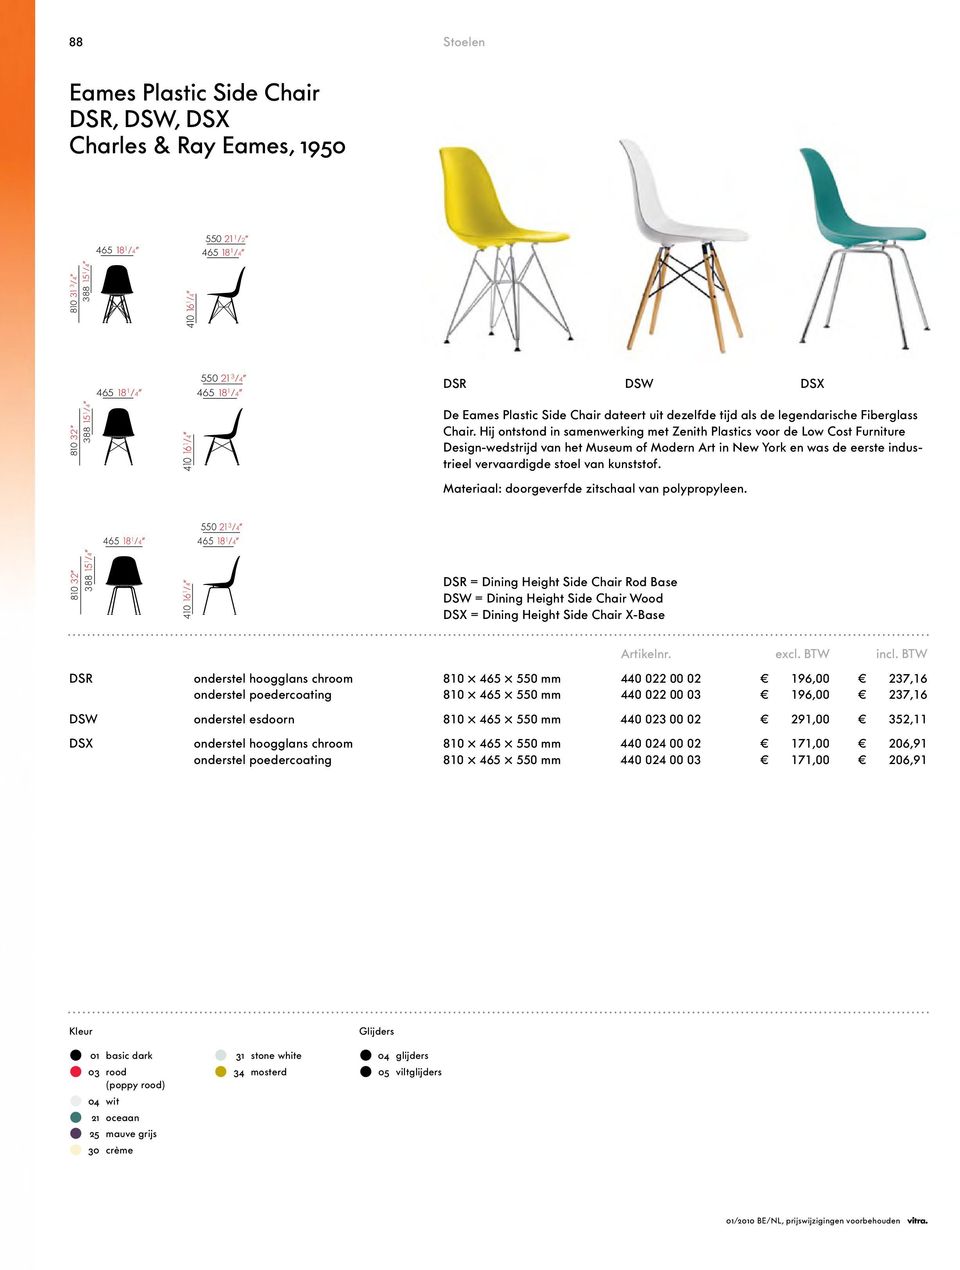 Hij ontstond in samenwerking met Zenith Plastics voor de Low Cost Furniture Design-wedstrijd van het Museum of Modern Art in New York en was de eerste industrieel vervaardigde stoel van kunststof.